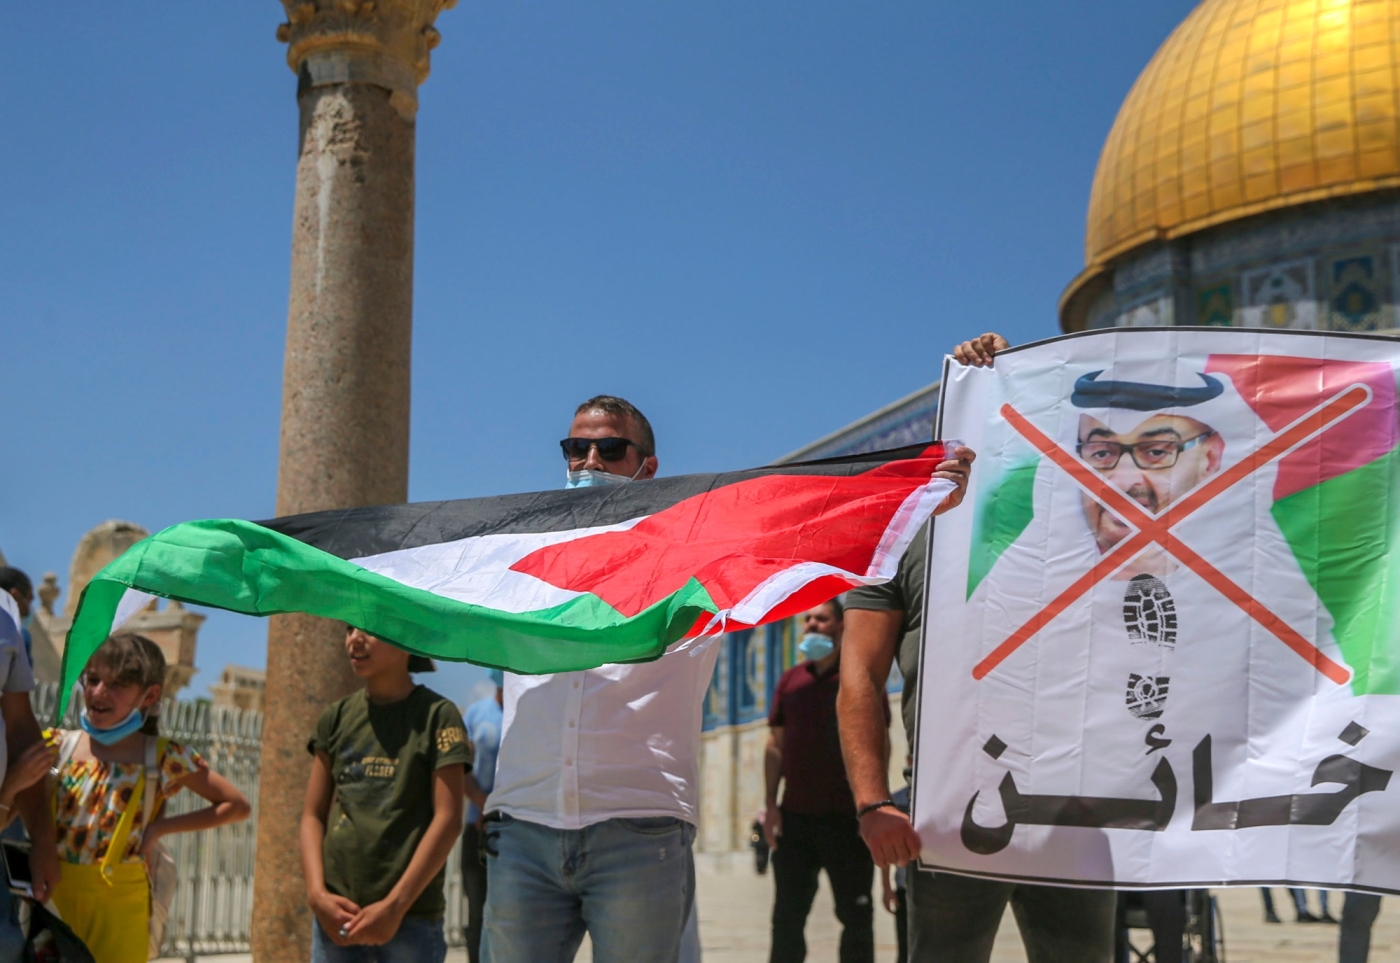 Des manifestants palestiniens protestent contre le prince héritier émirati, Mohammed ben Zayed, accusé sur la banderole d’être un « traître », le 14 août 2020 à Jérusalem-Est occupée (AFP)